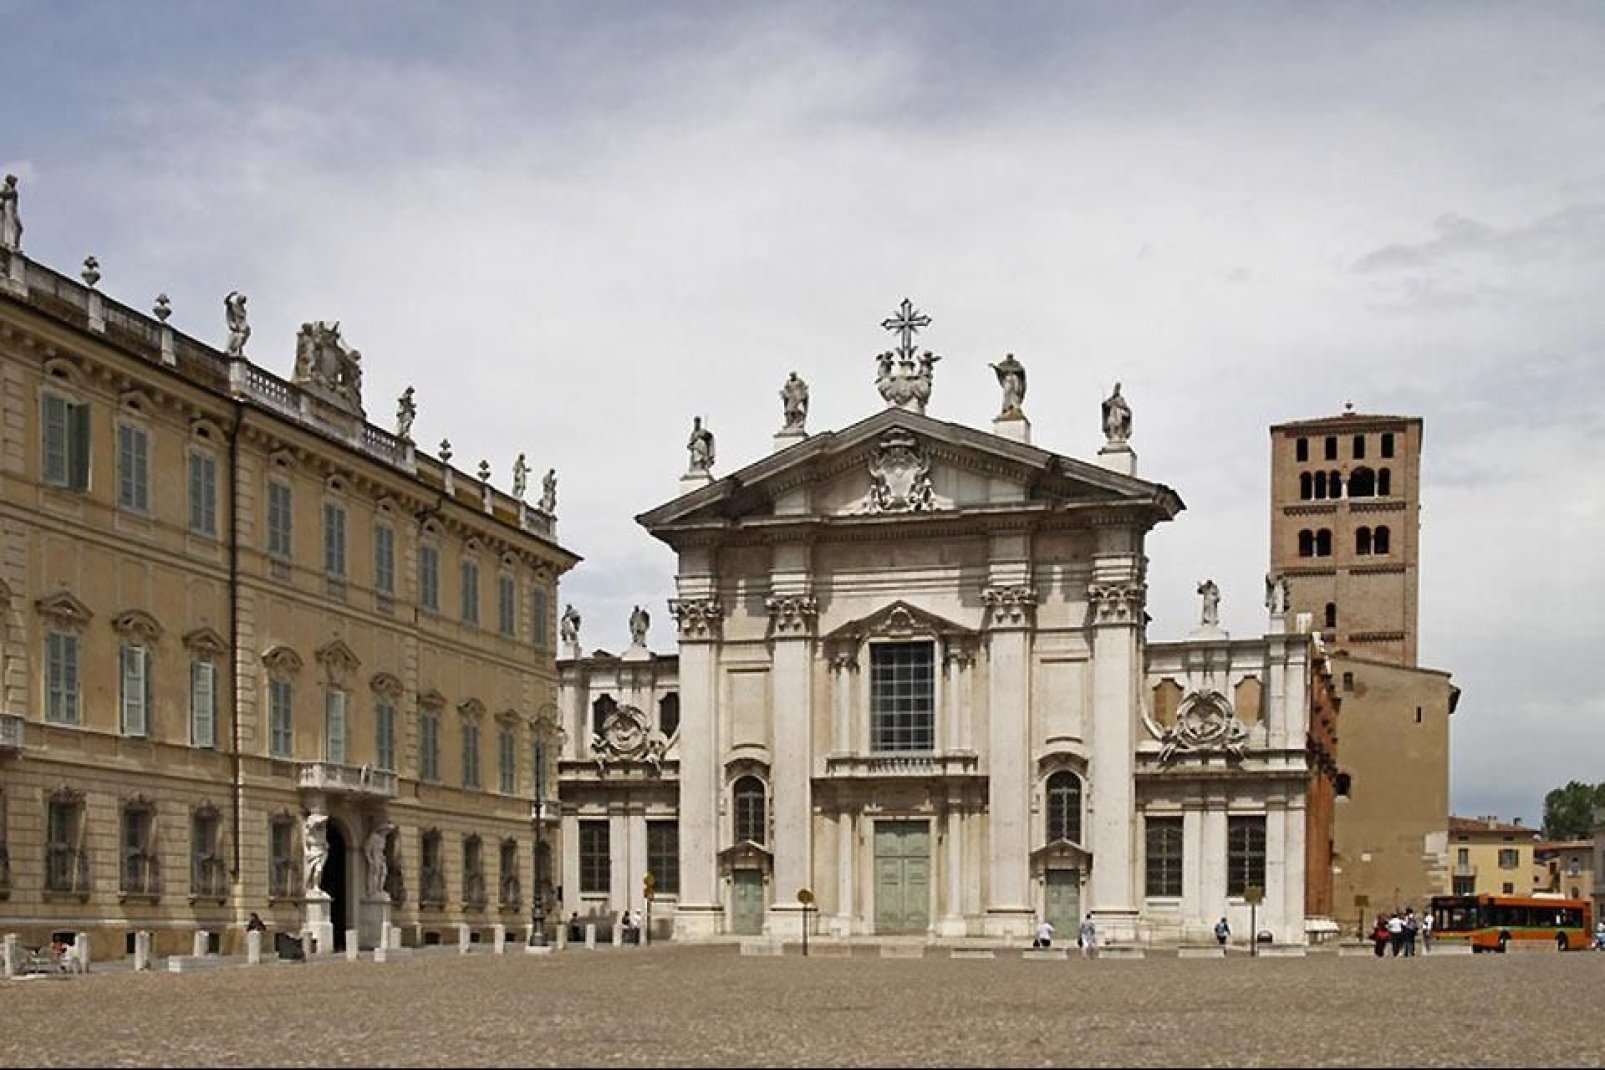 La fachada de la catedral de San Pedro de la Piazza Sordello, muy evocadora y antiguo centro de la vida política, mundana y religiosa de Mantua.